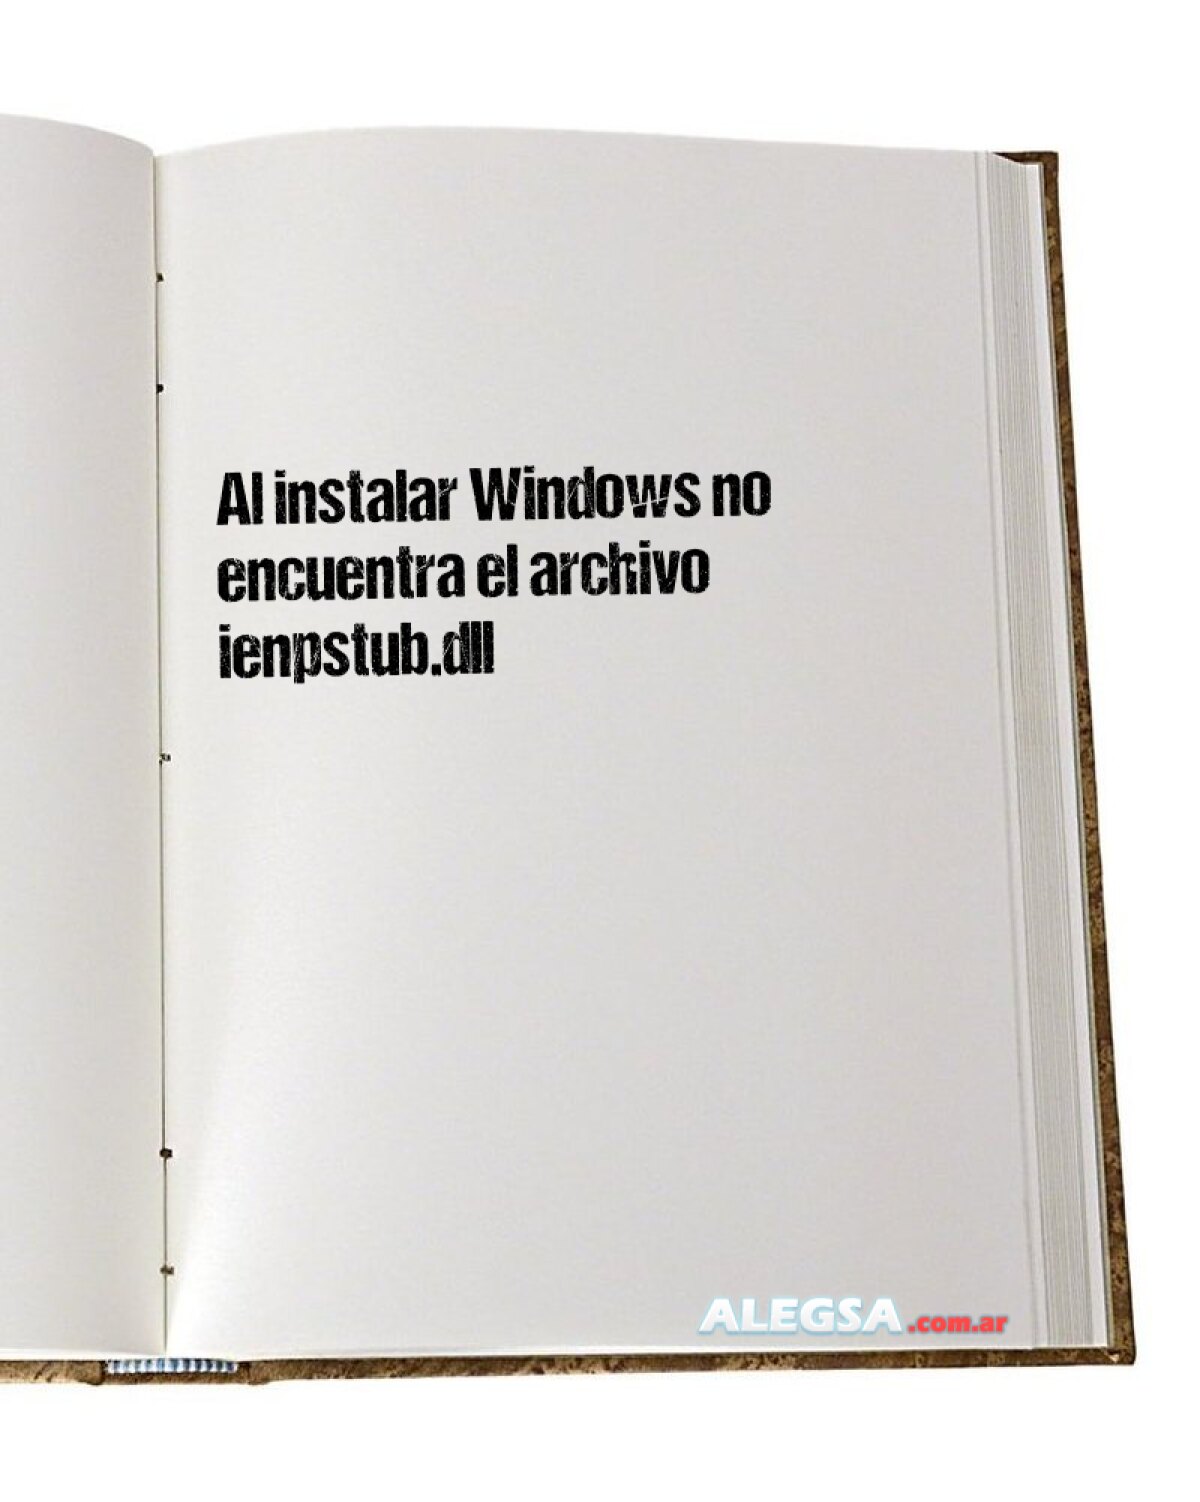 Al instalar Windows no encuentra el archivo ienpstub.dll